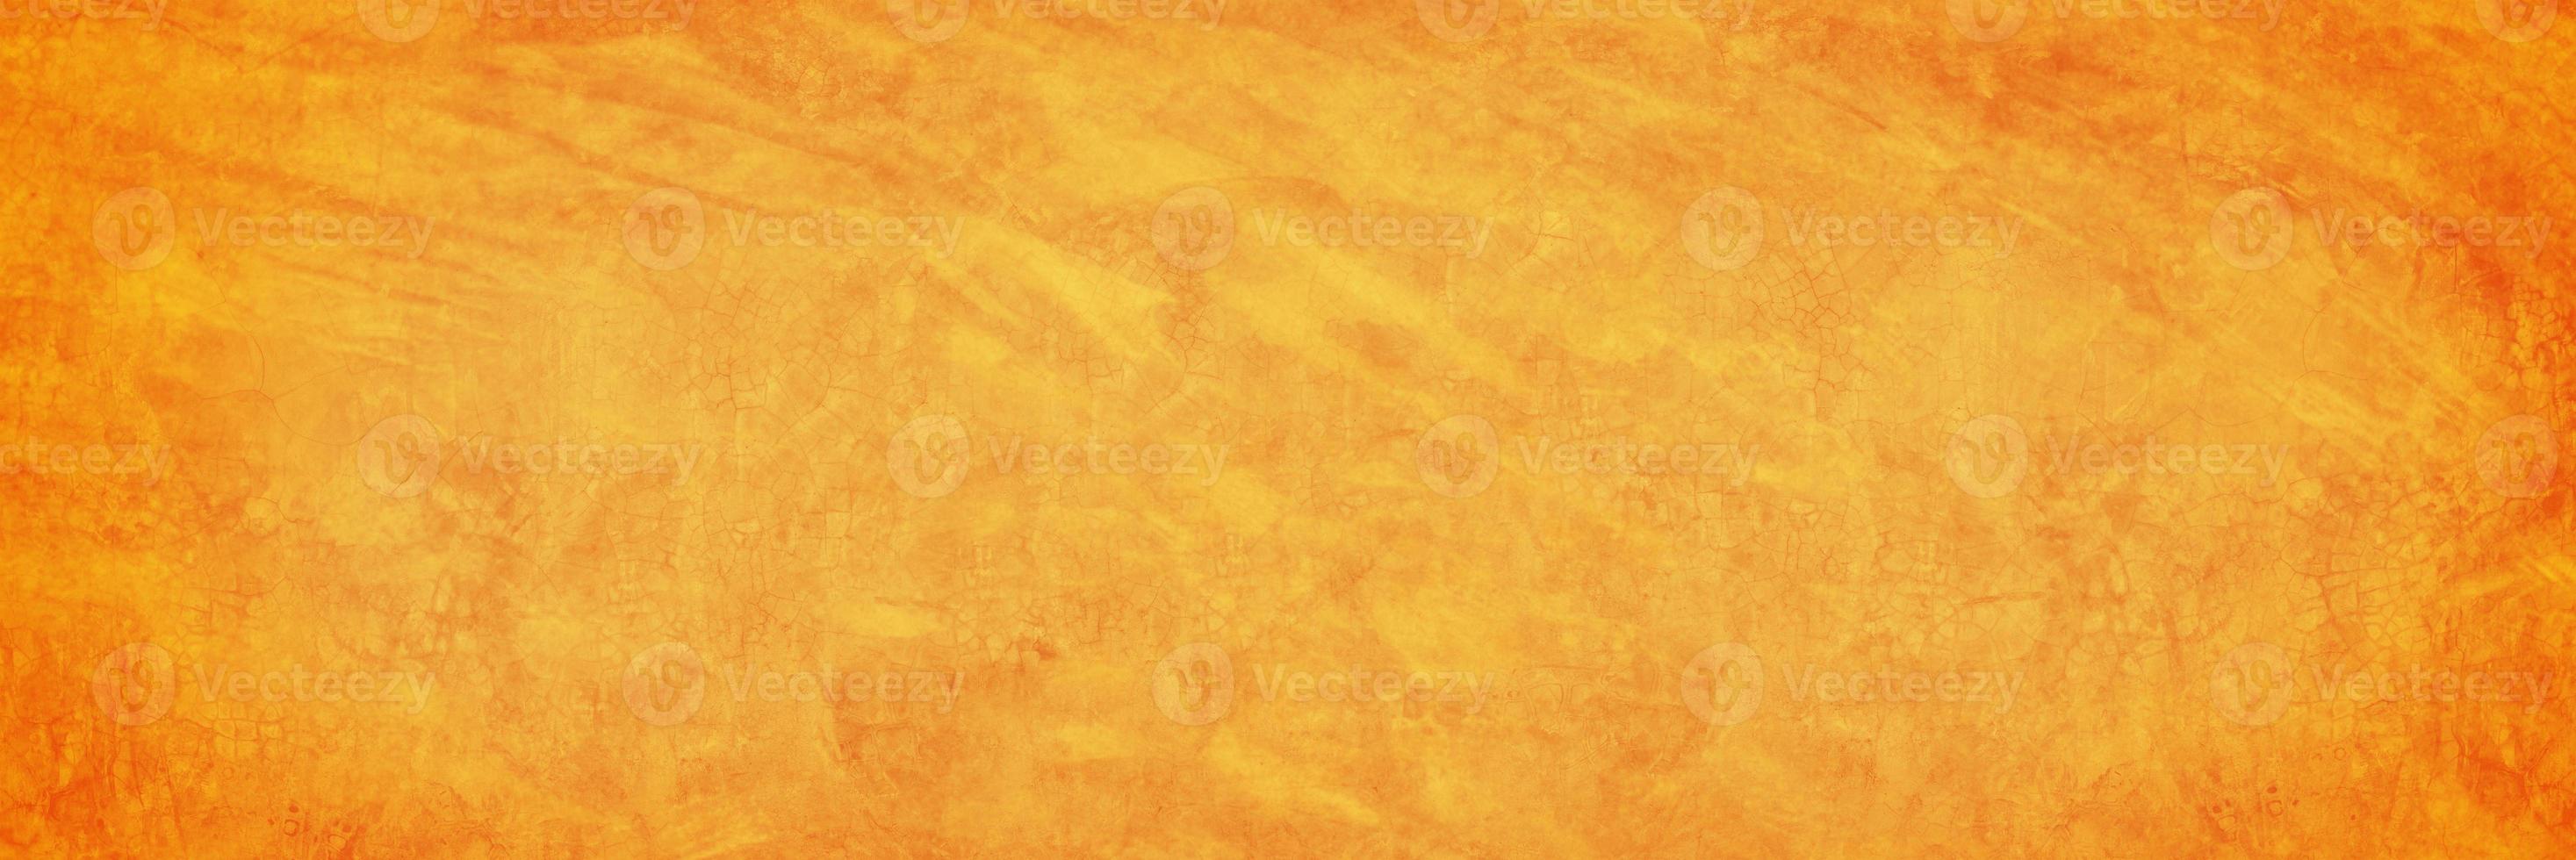 Mur de ciment ou de béton orange pour le fond ou la texture photo